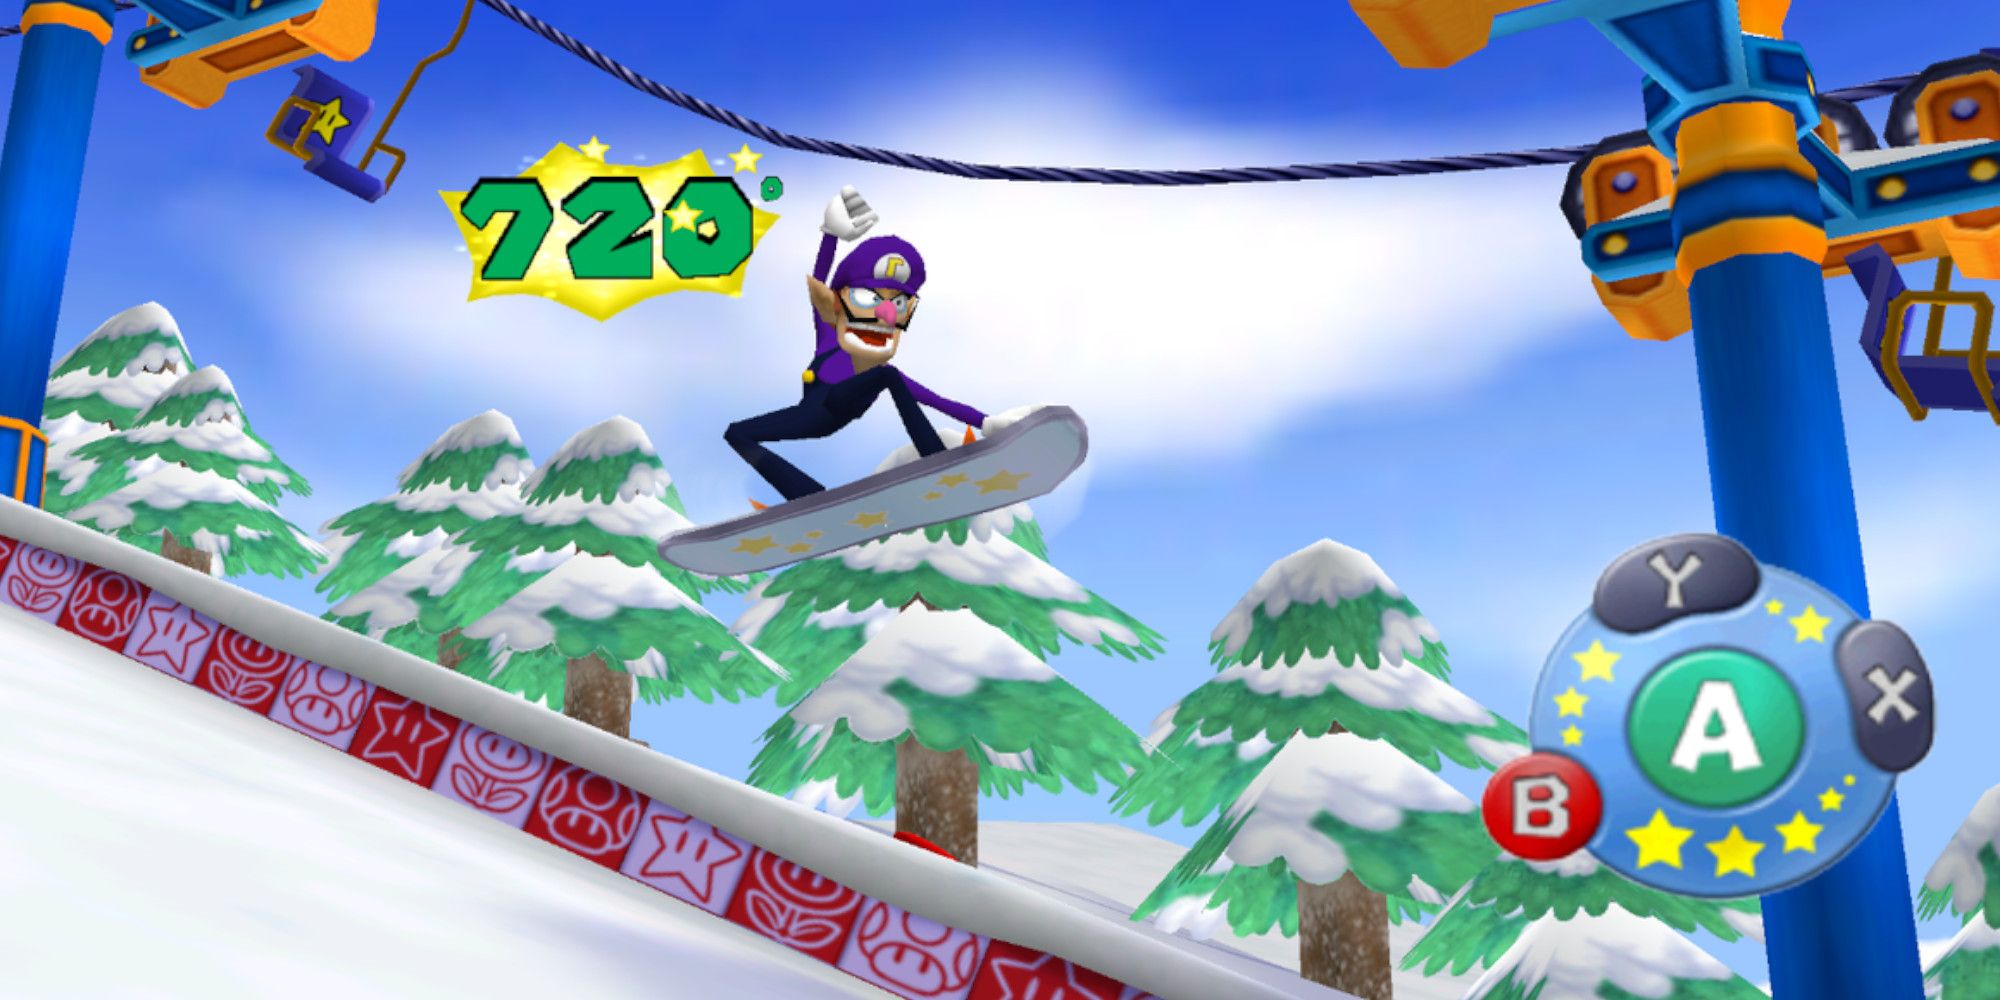 Waluigi takes part in Mario Party 6's Snow Whirl minigame